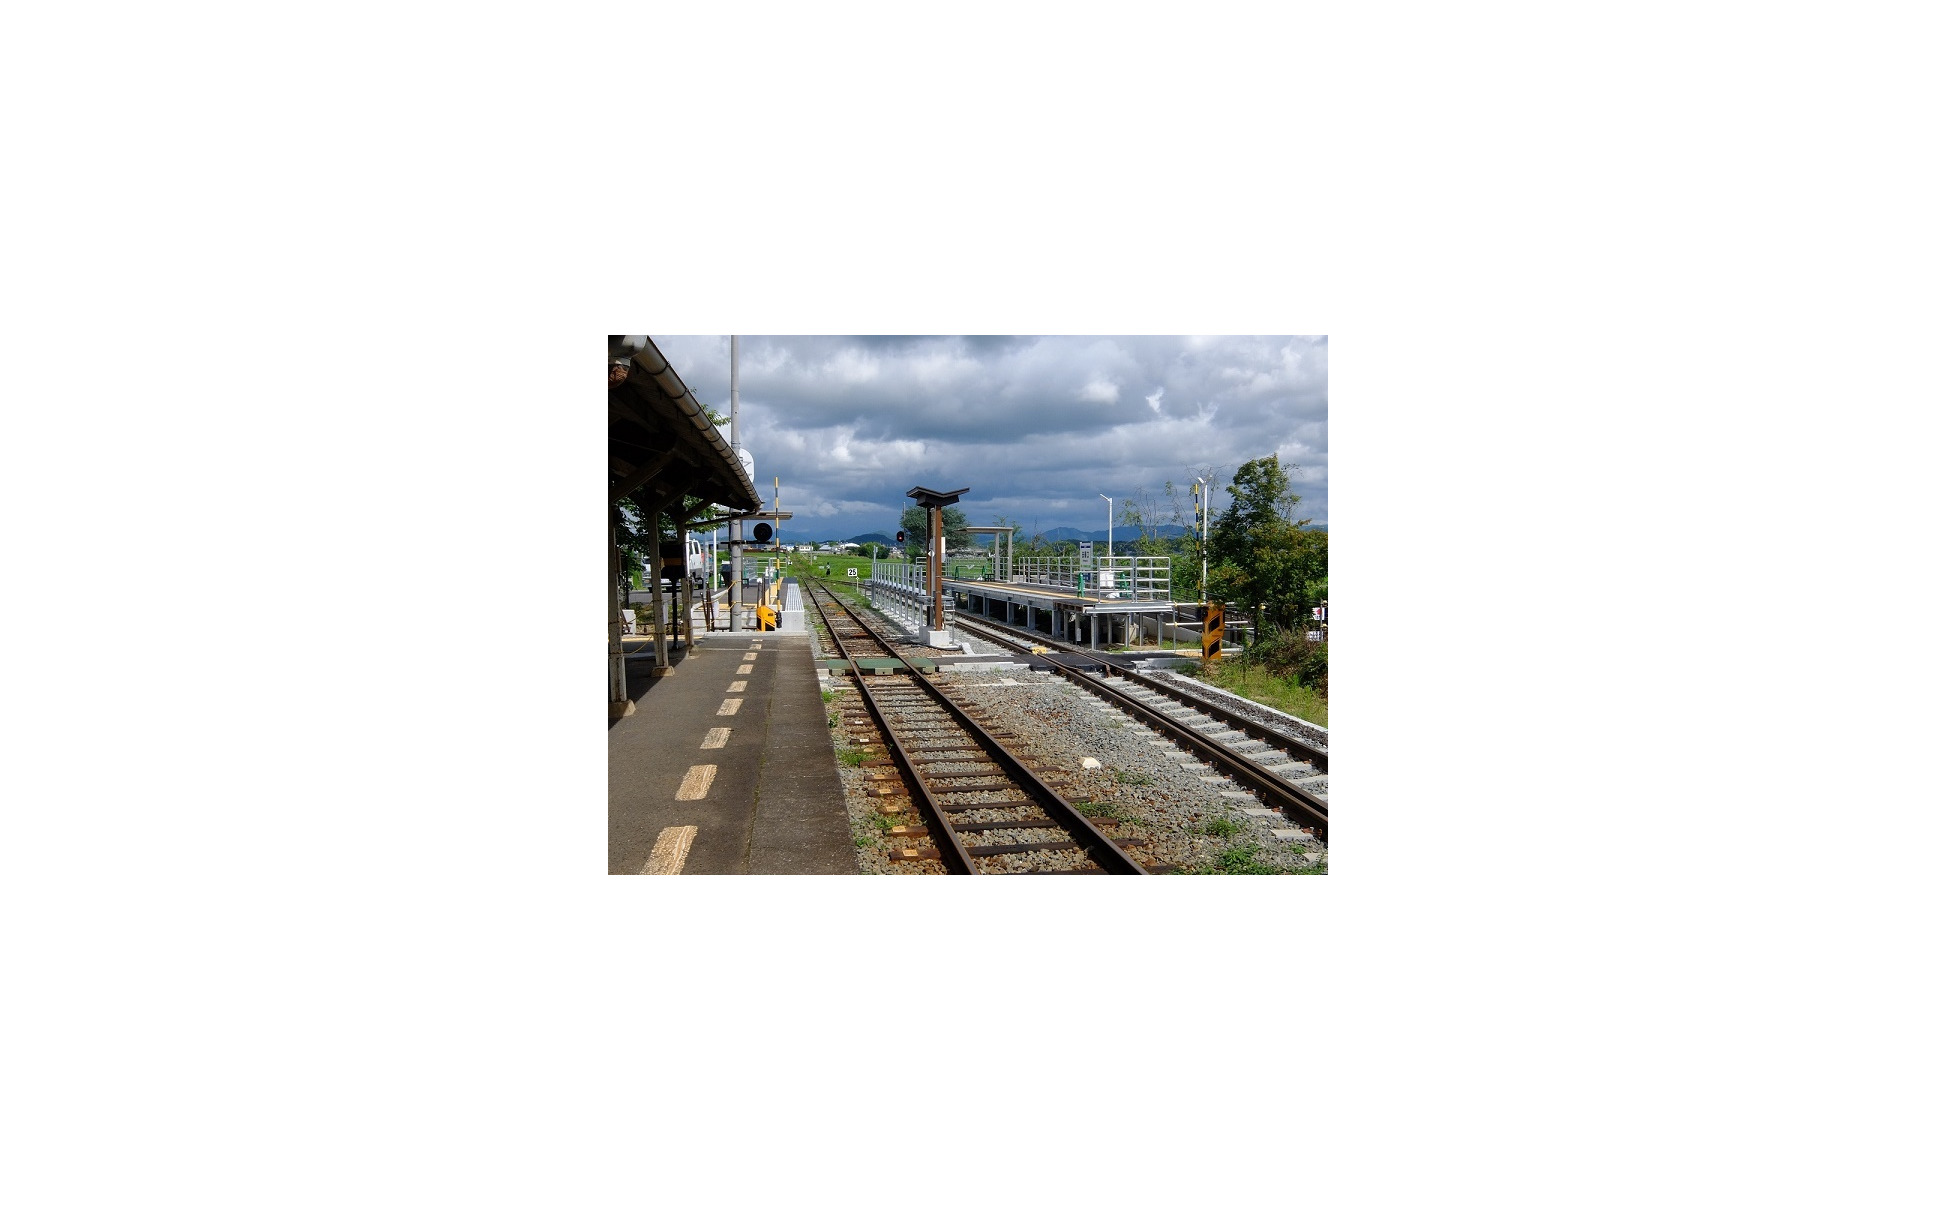 兵庫県のローカル鉄道に交換設備が完成 北条鉄道 国の補助とふるさと納税で設置 9月1日から運用 1枚目の写真 画像 レスポンス Response Jp